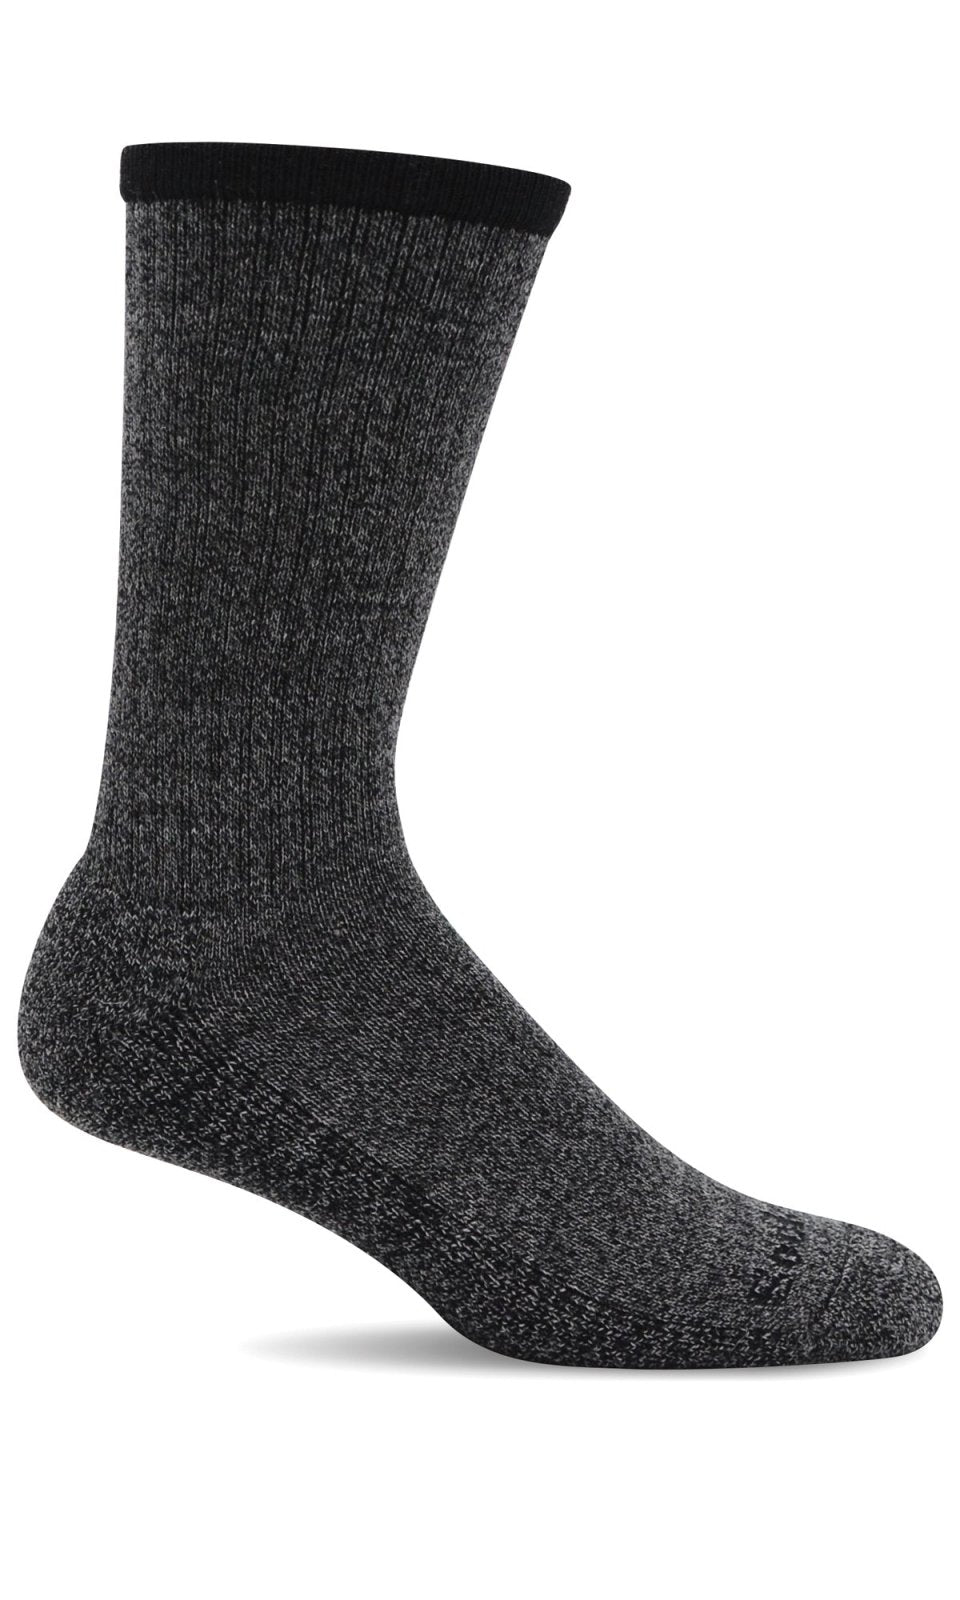 Men's Ranger | Essential Comfort Socks - Merino Wool Essential Comfort - Sockwell